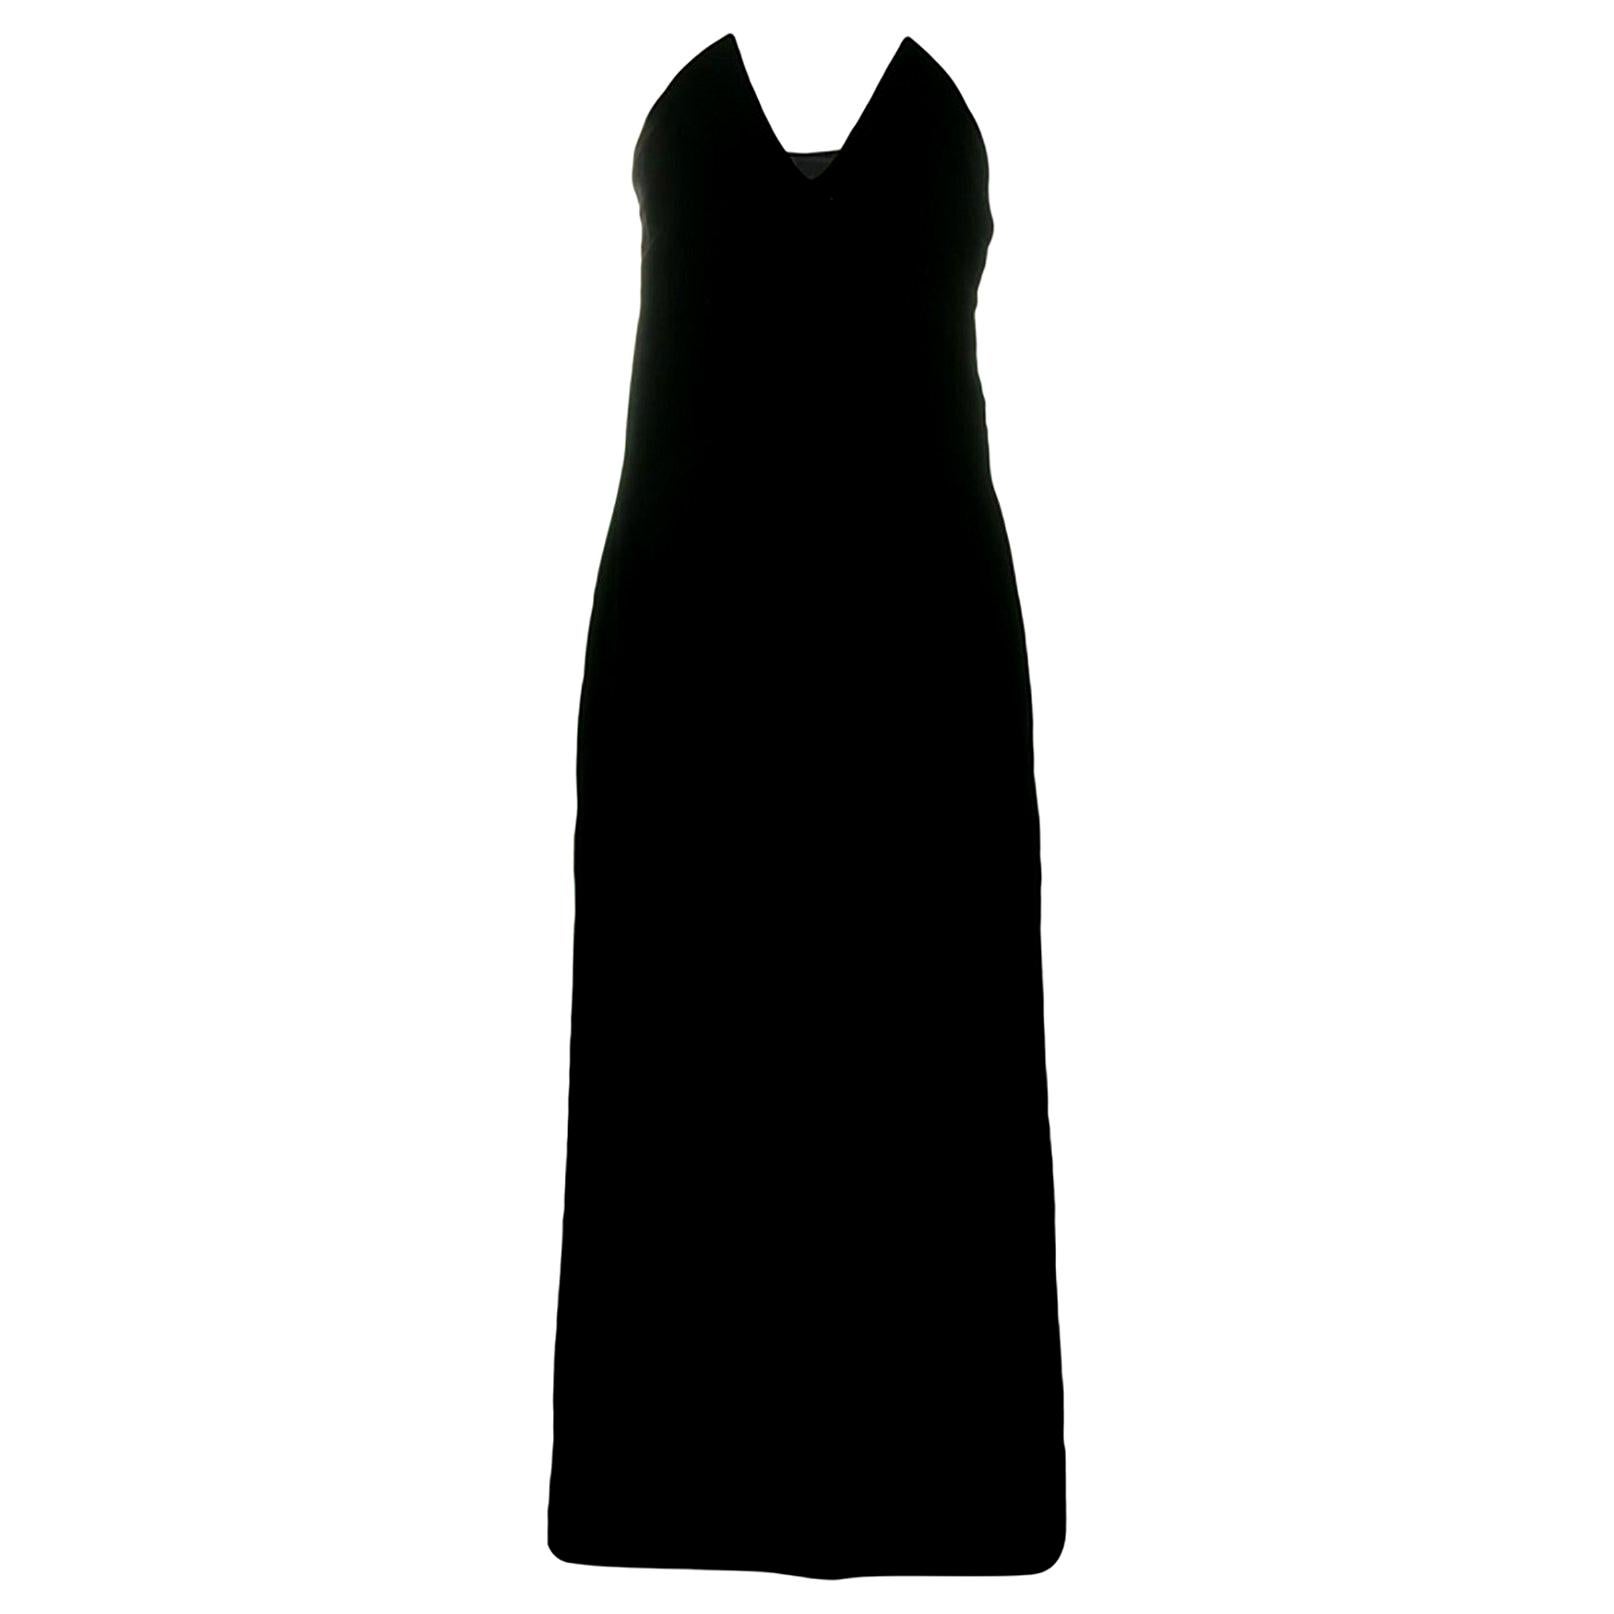  1996s Iconic Yves Saint Laurent Black Velvet Dress Shoot by Helmut Newton 